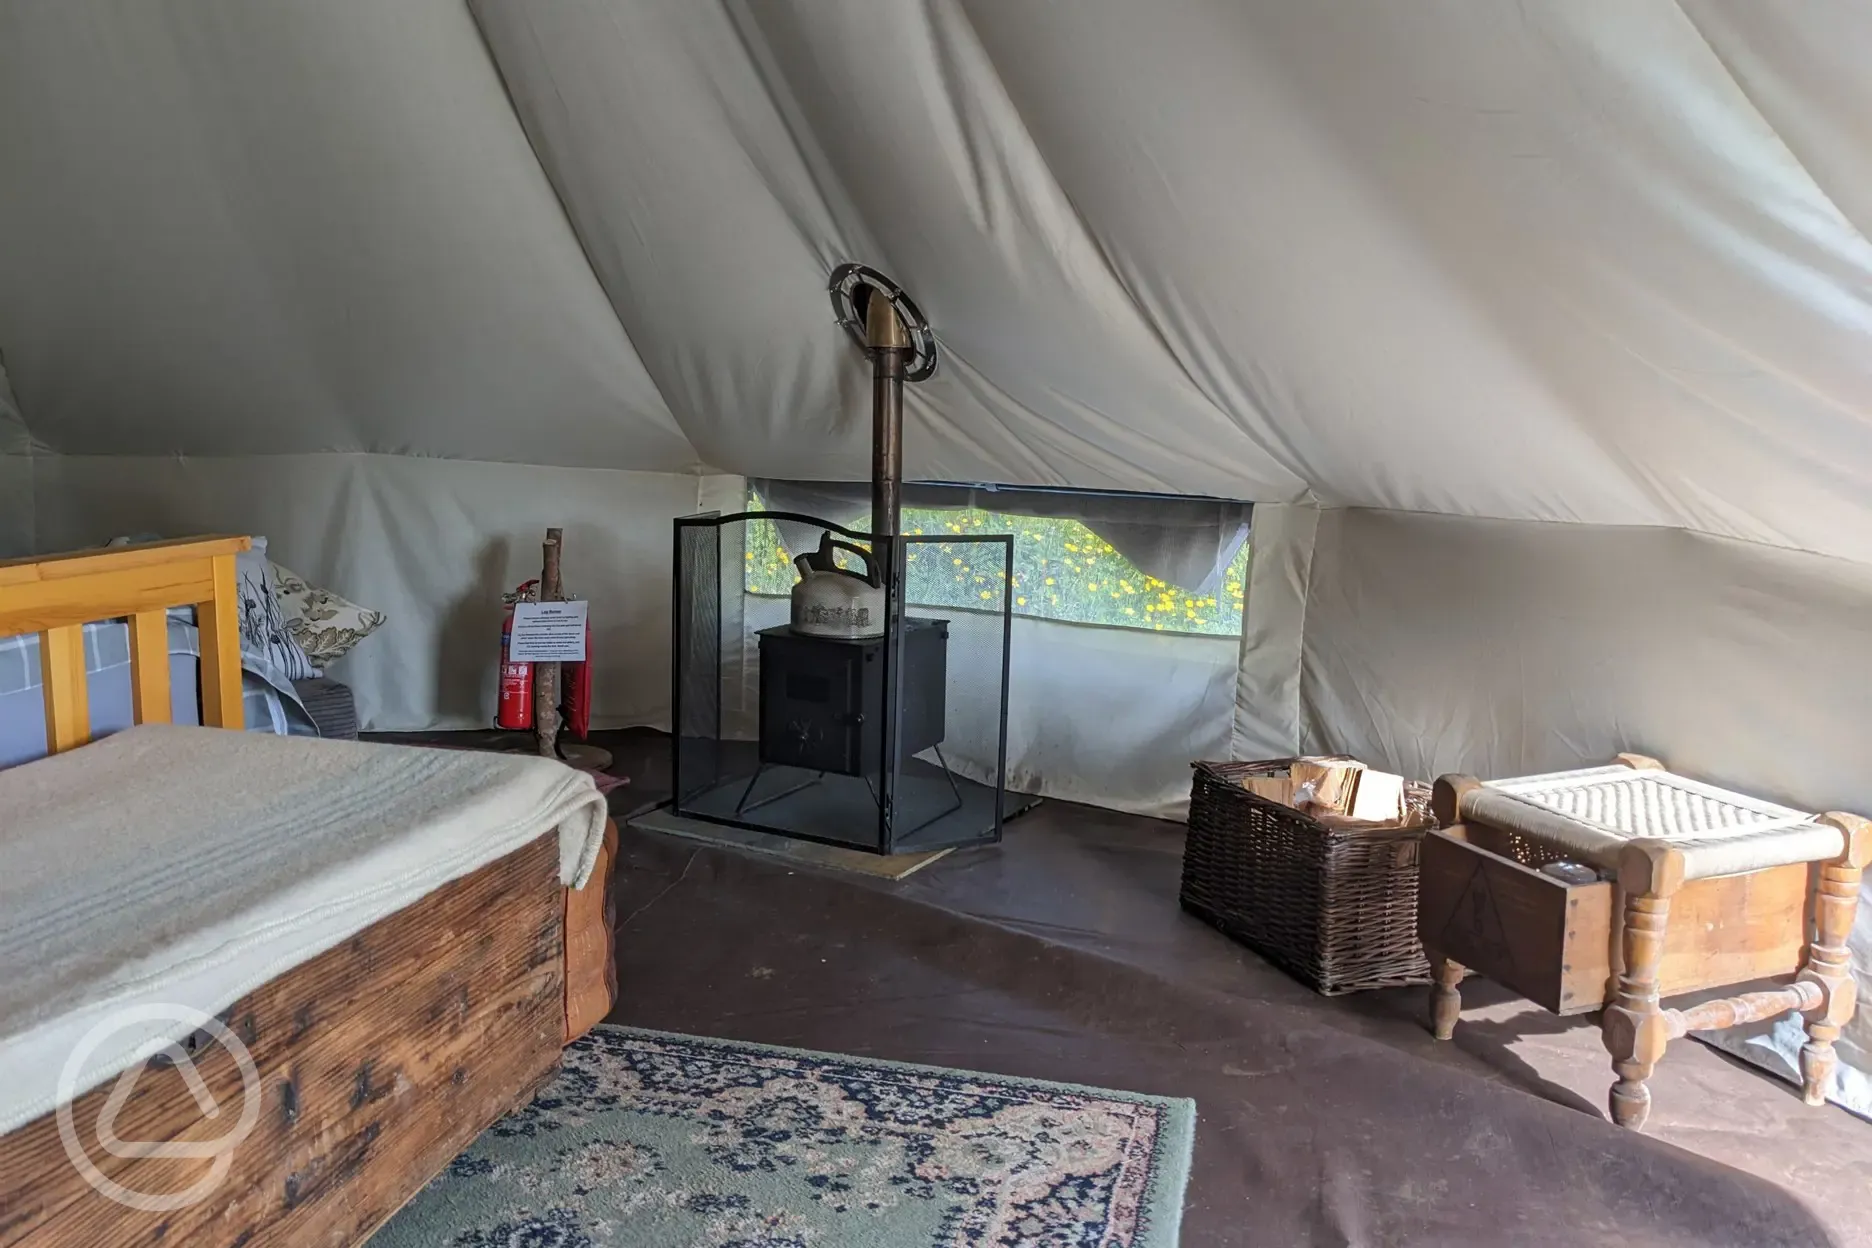 Inside bell tent with log burner